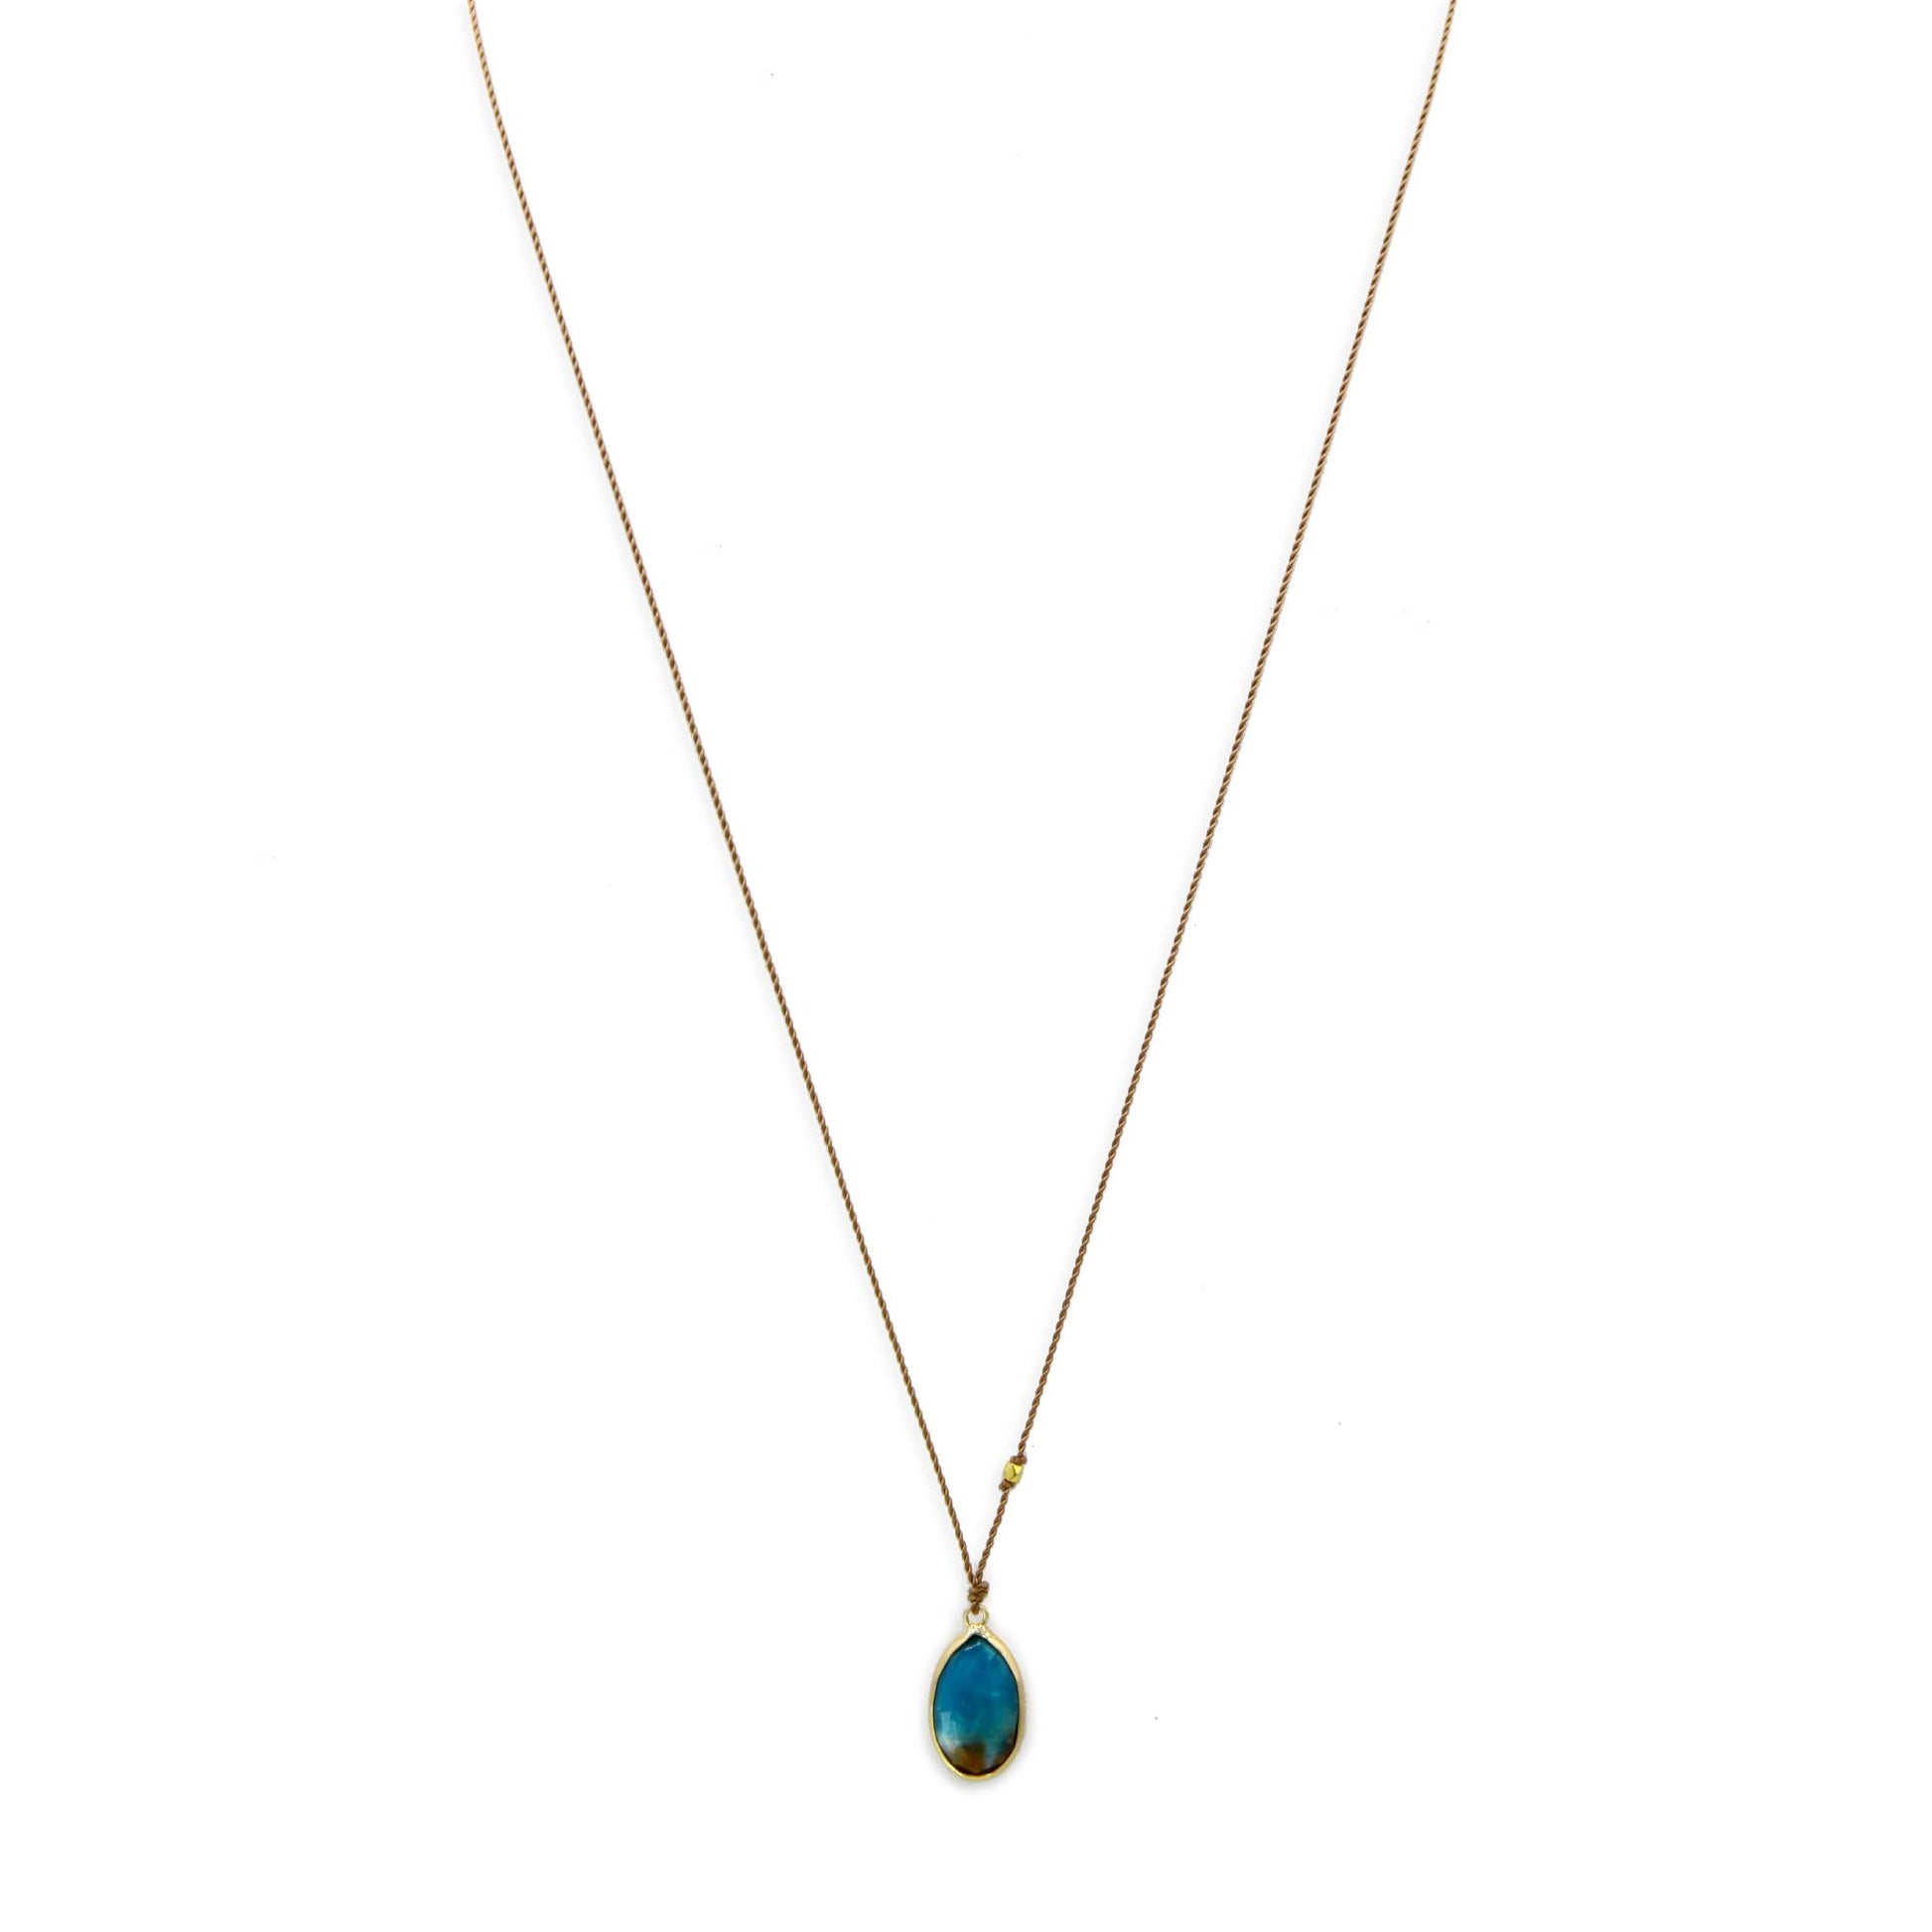 Margaret Solow Jewelry | Peruvian Opal + 14k Gold Drop Necklace | Firecracker